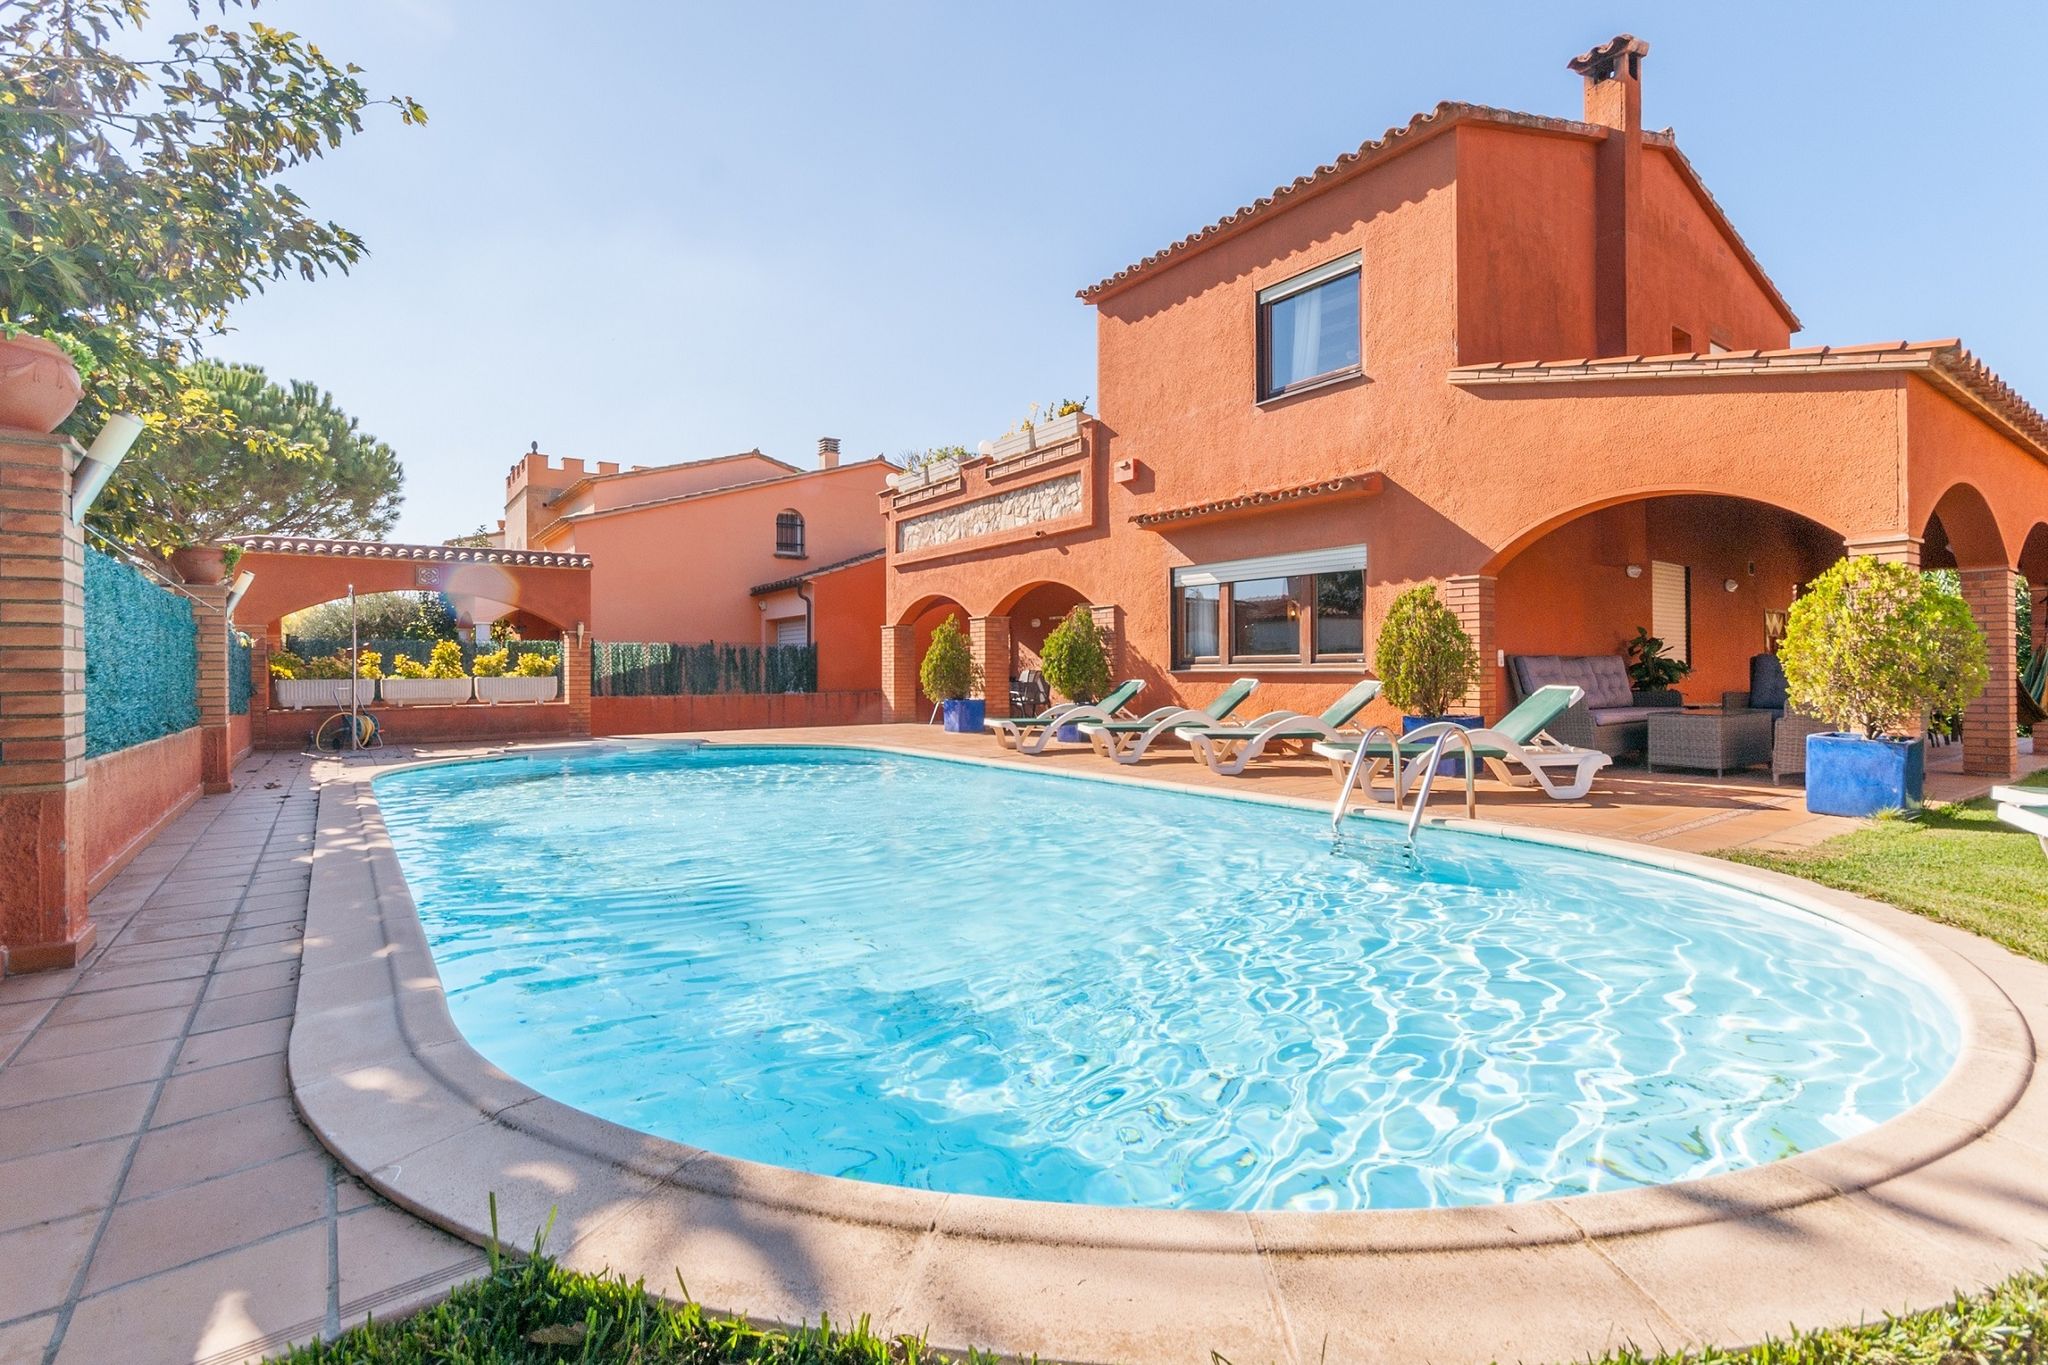 Maison de vacances confortable à Gérone avec piscine